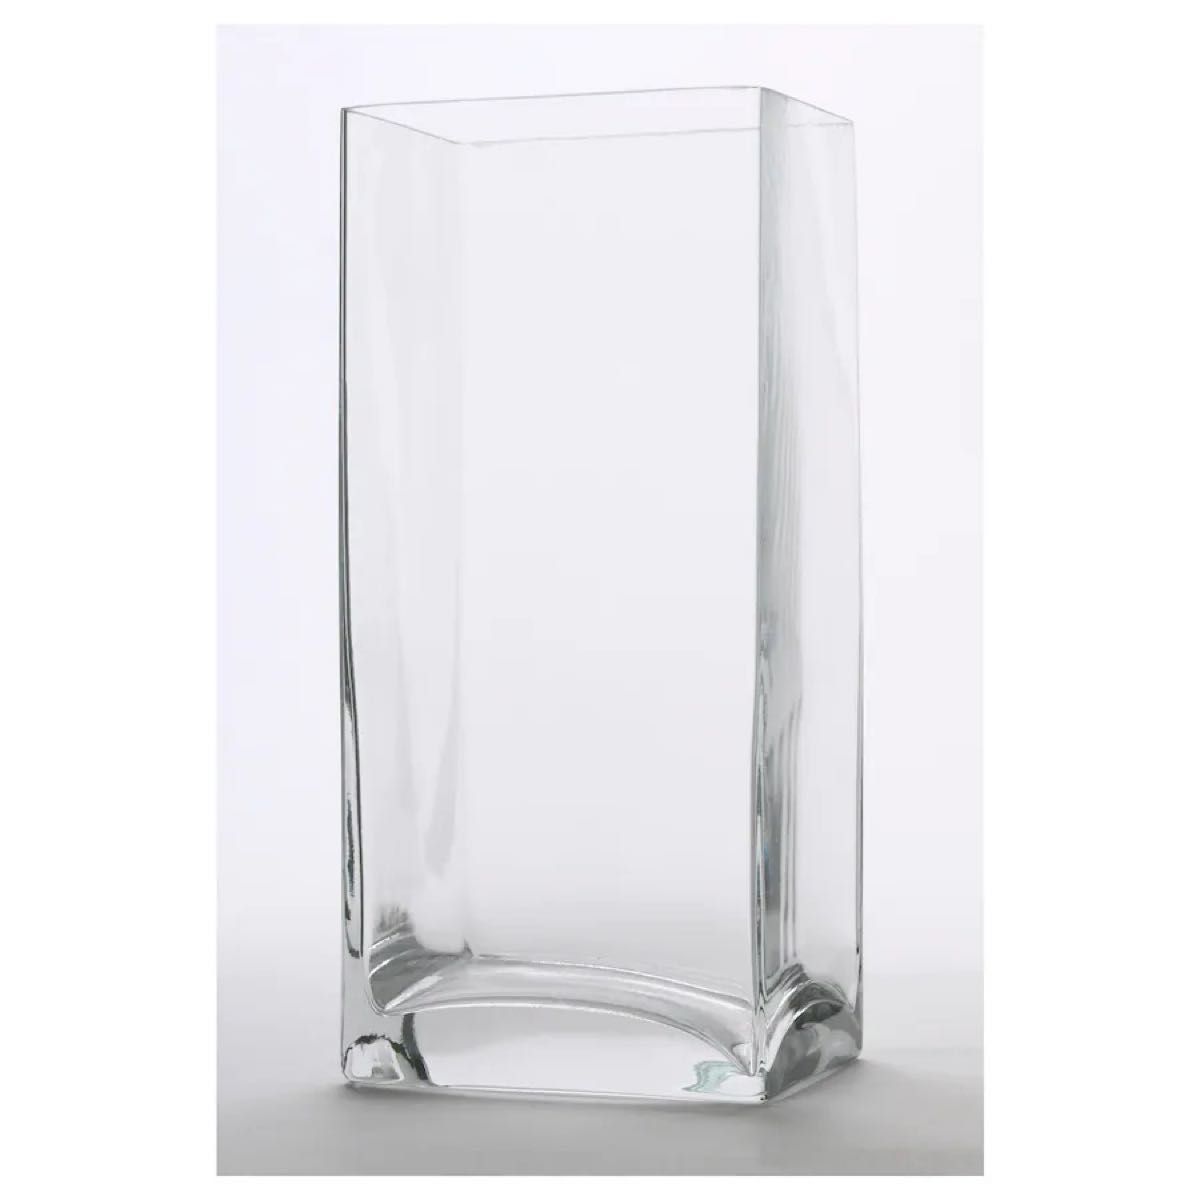 【新品・お値下げしました】IKEA イケア フラワーベース クリアガラス レクタンゲル ベレークナ 2個セット 北欧花瓶